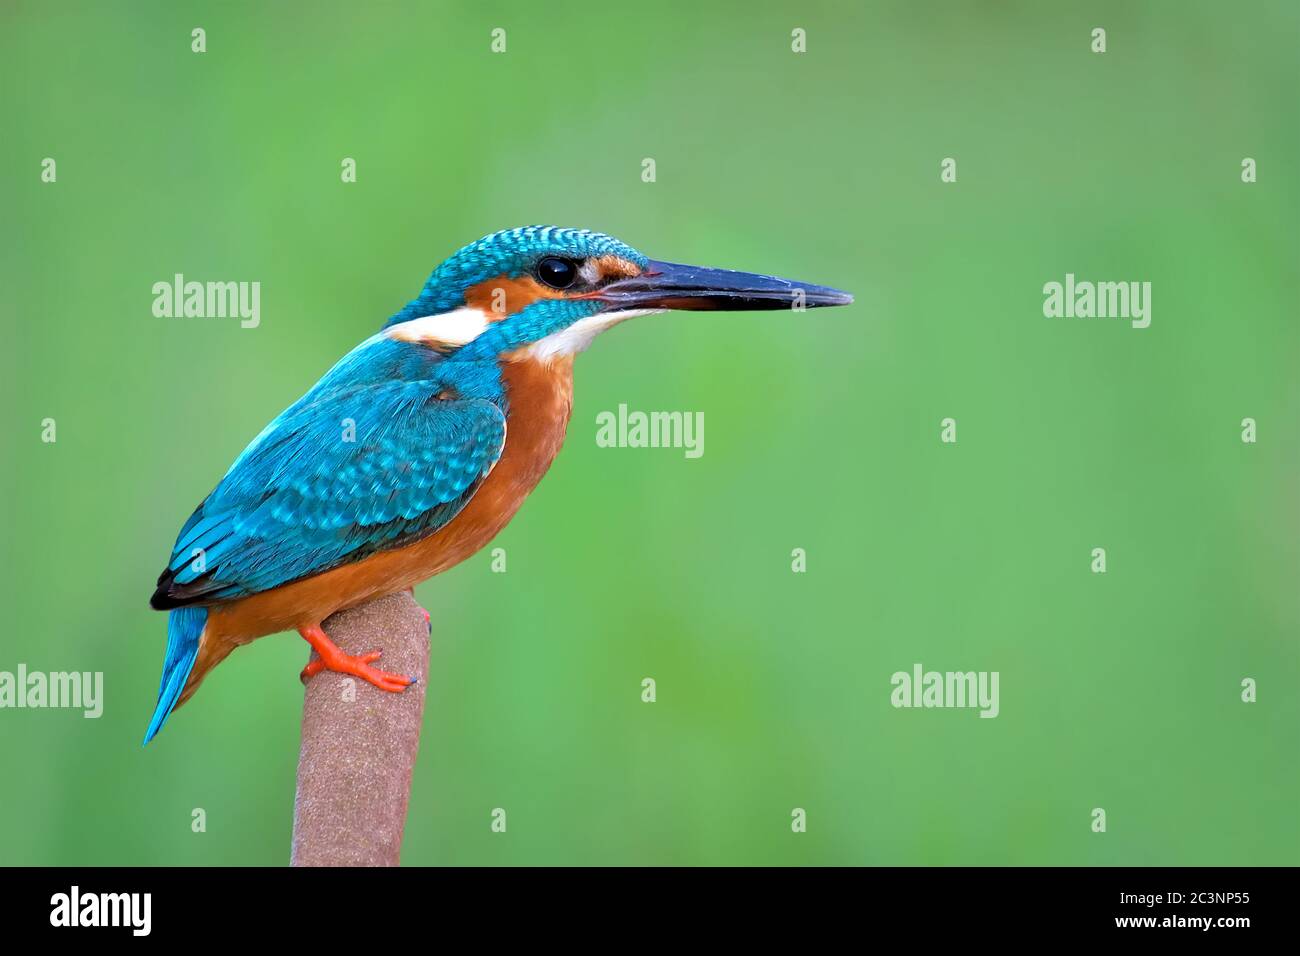 Le kingfisher commun, également connu sous le nom de kingfisher eurasien et de kingfisher de rivière, est un petit kingfisher dont sept sous-espèces sont reconnues dans sa W Banque D'Images